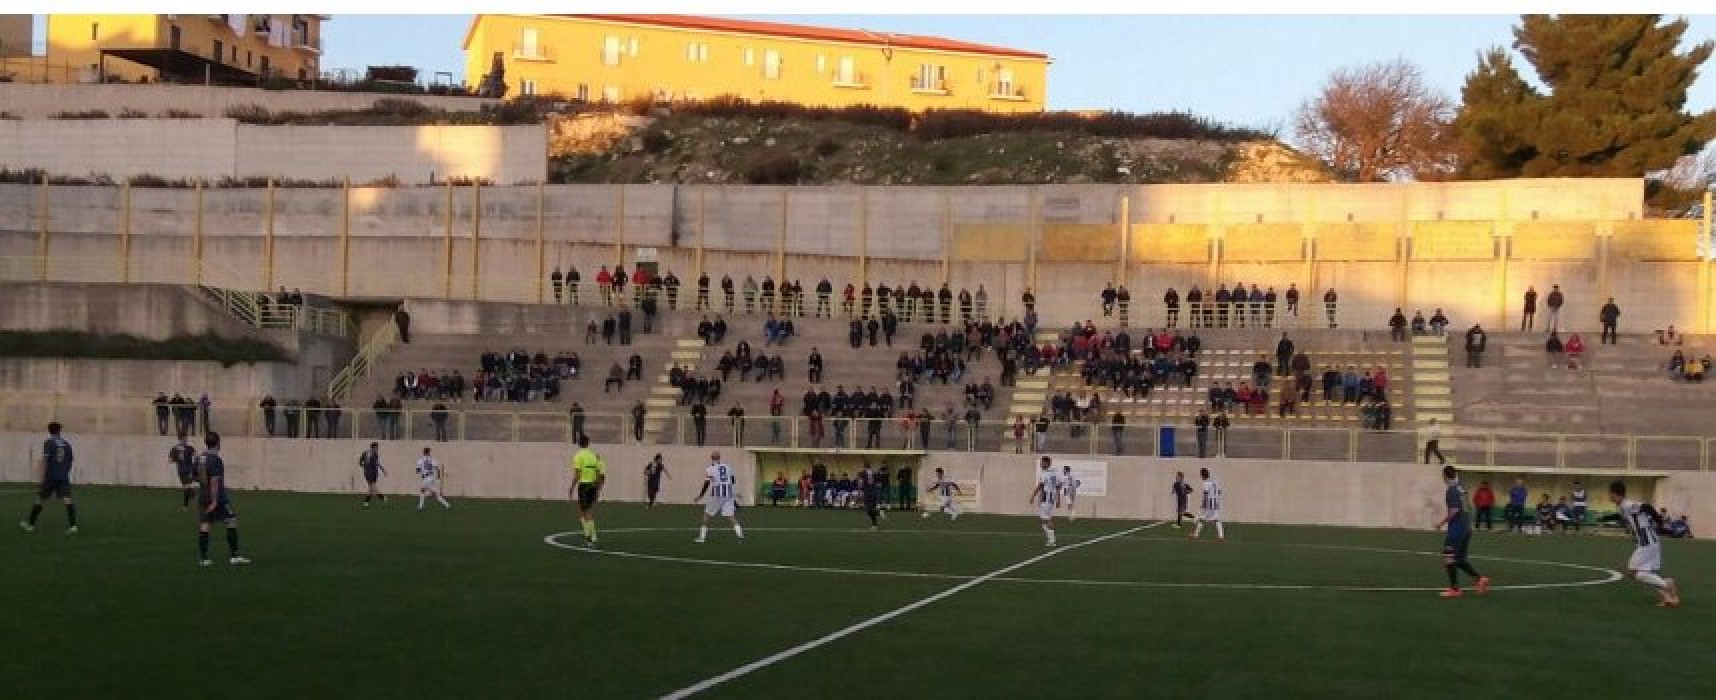 Unione Calcio bloccata sul pari a Monte Sant’Angelo